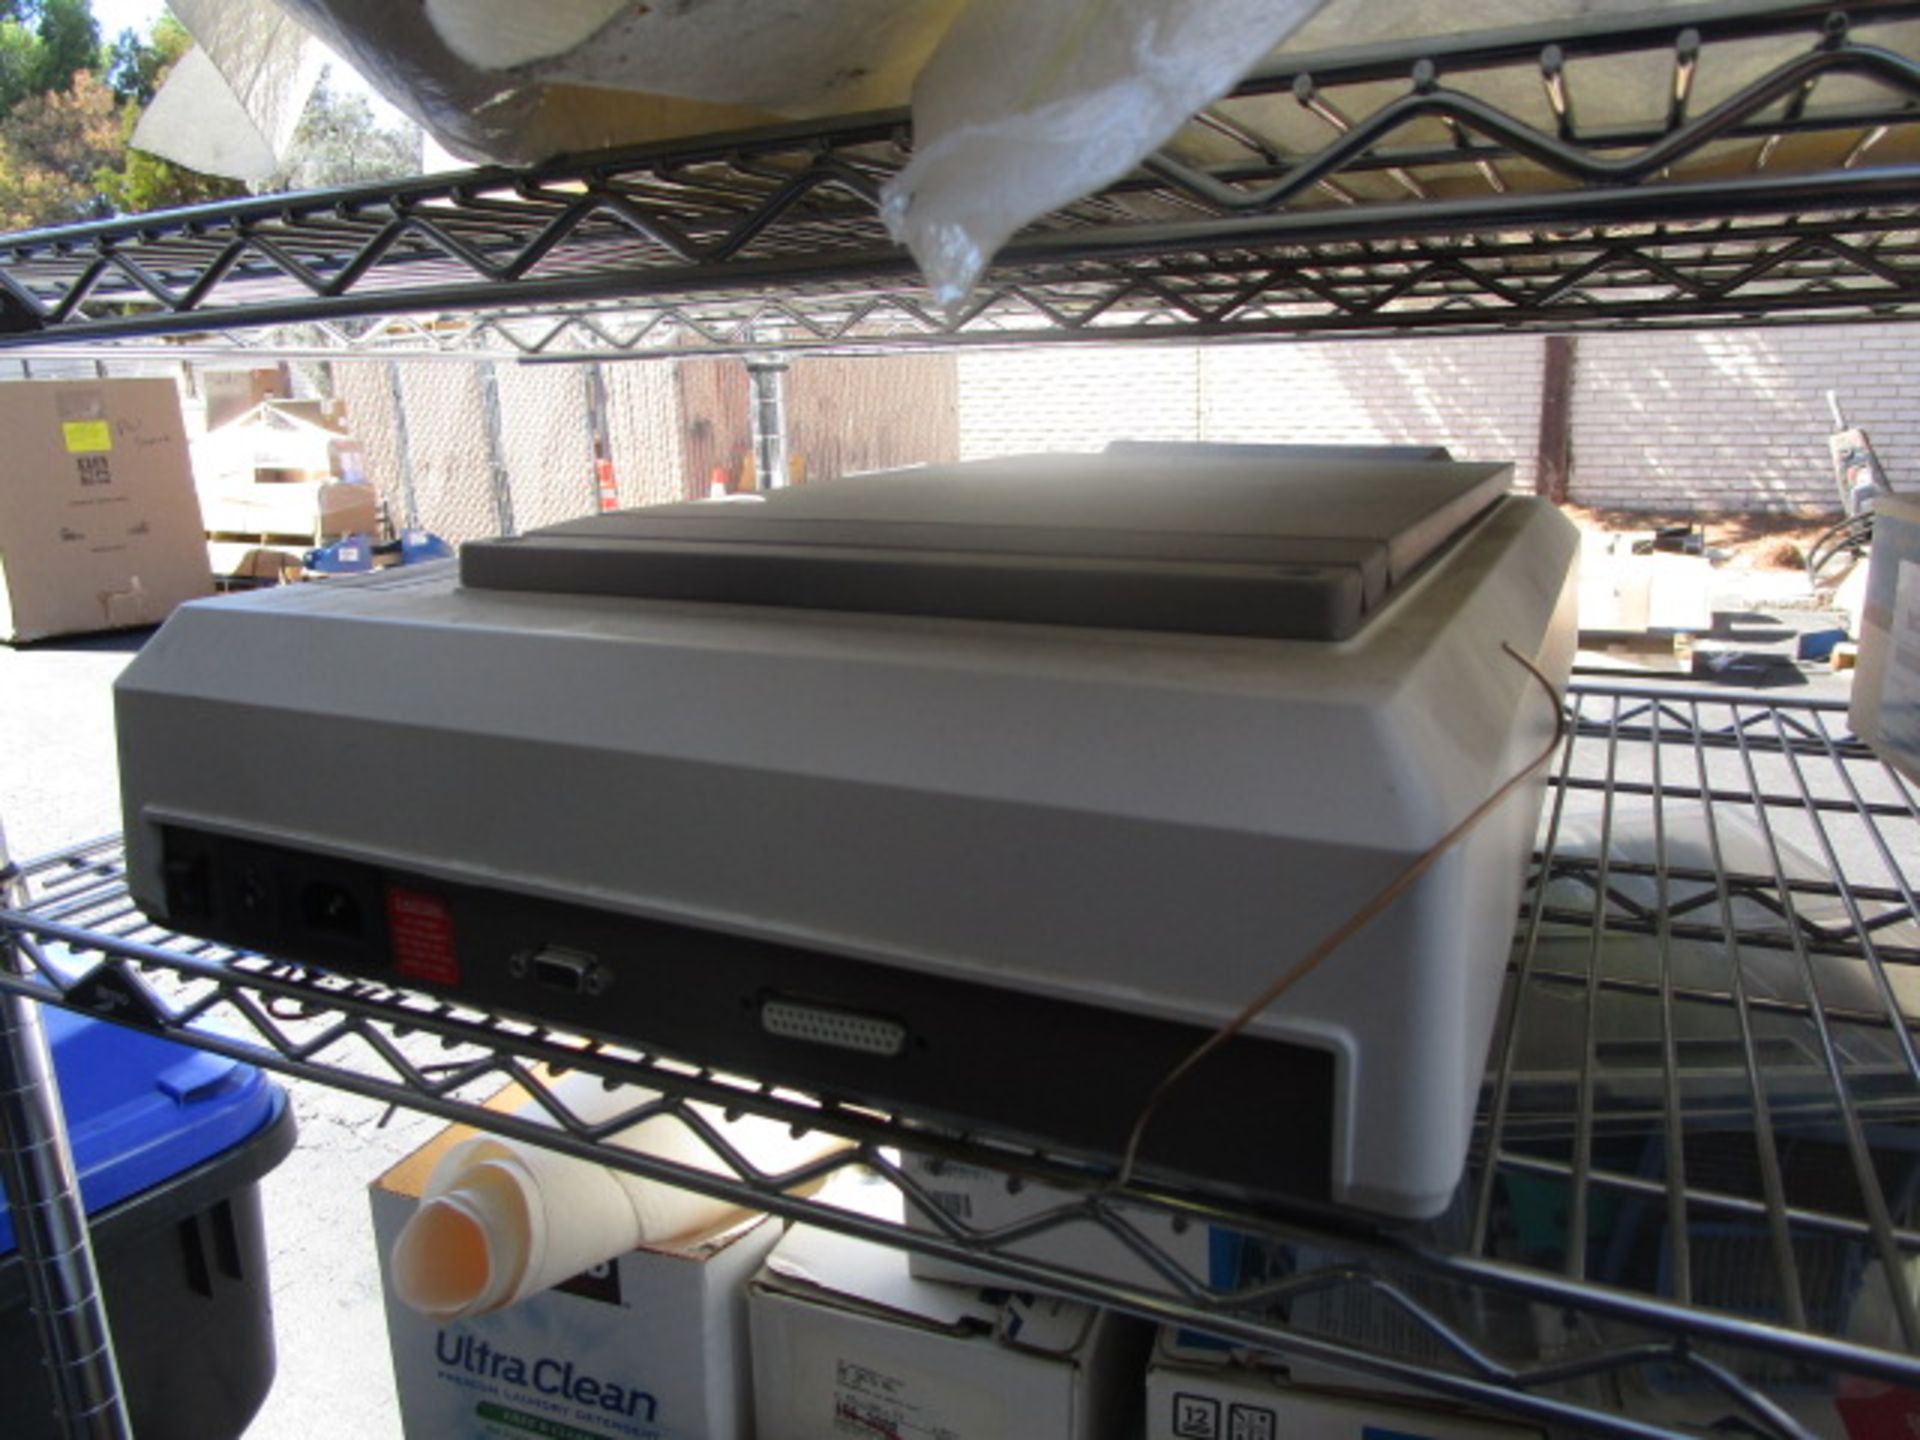 Microtek MSF-300A image scanner - Image 7 of 8